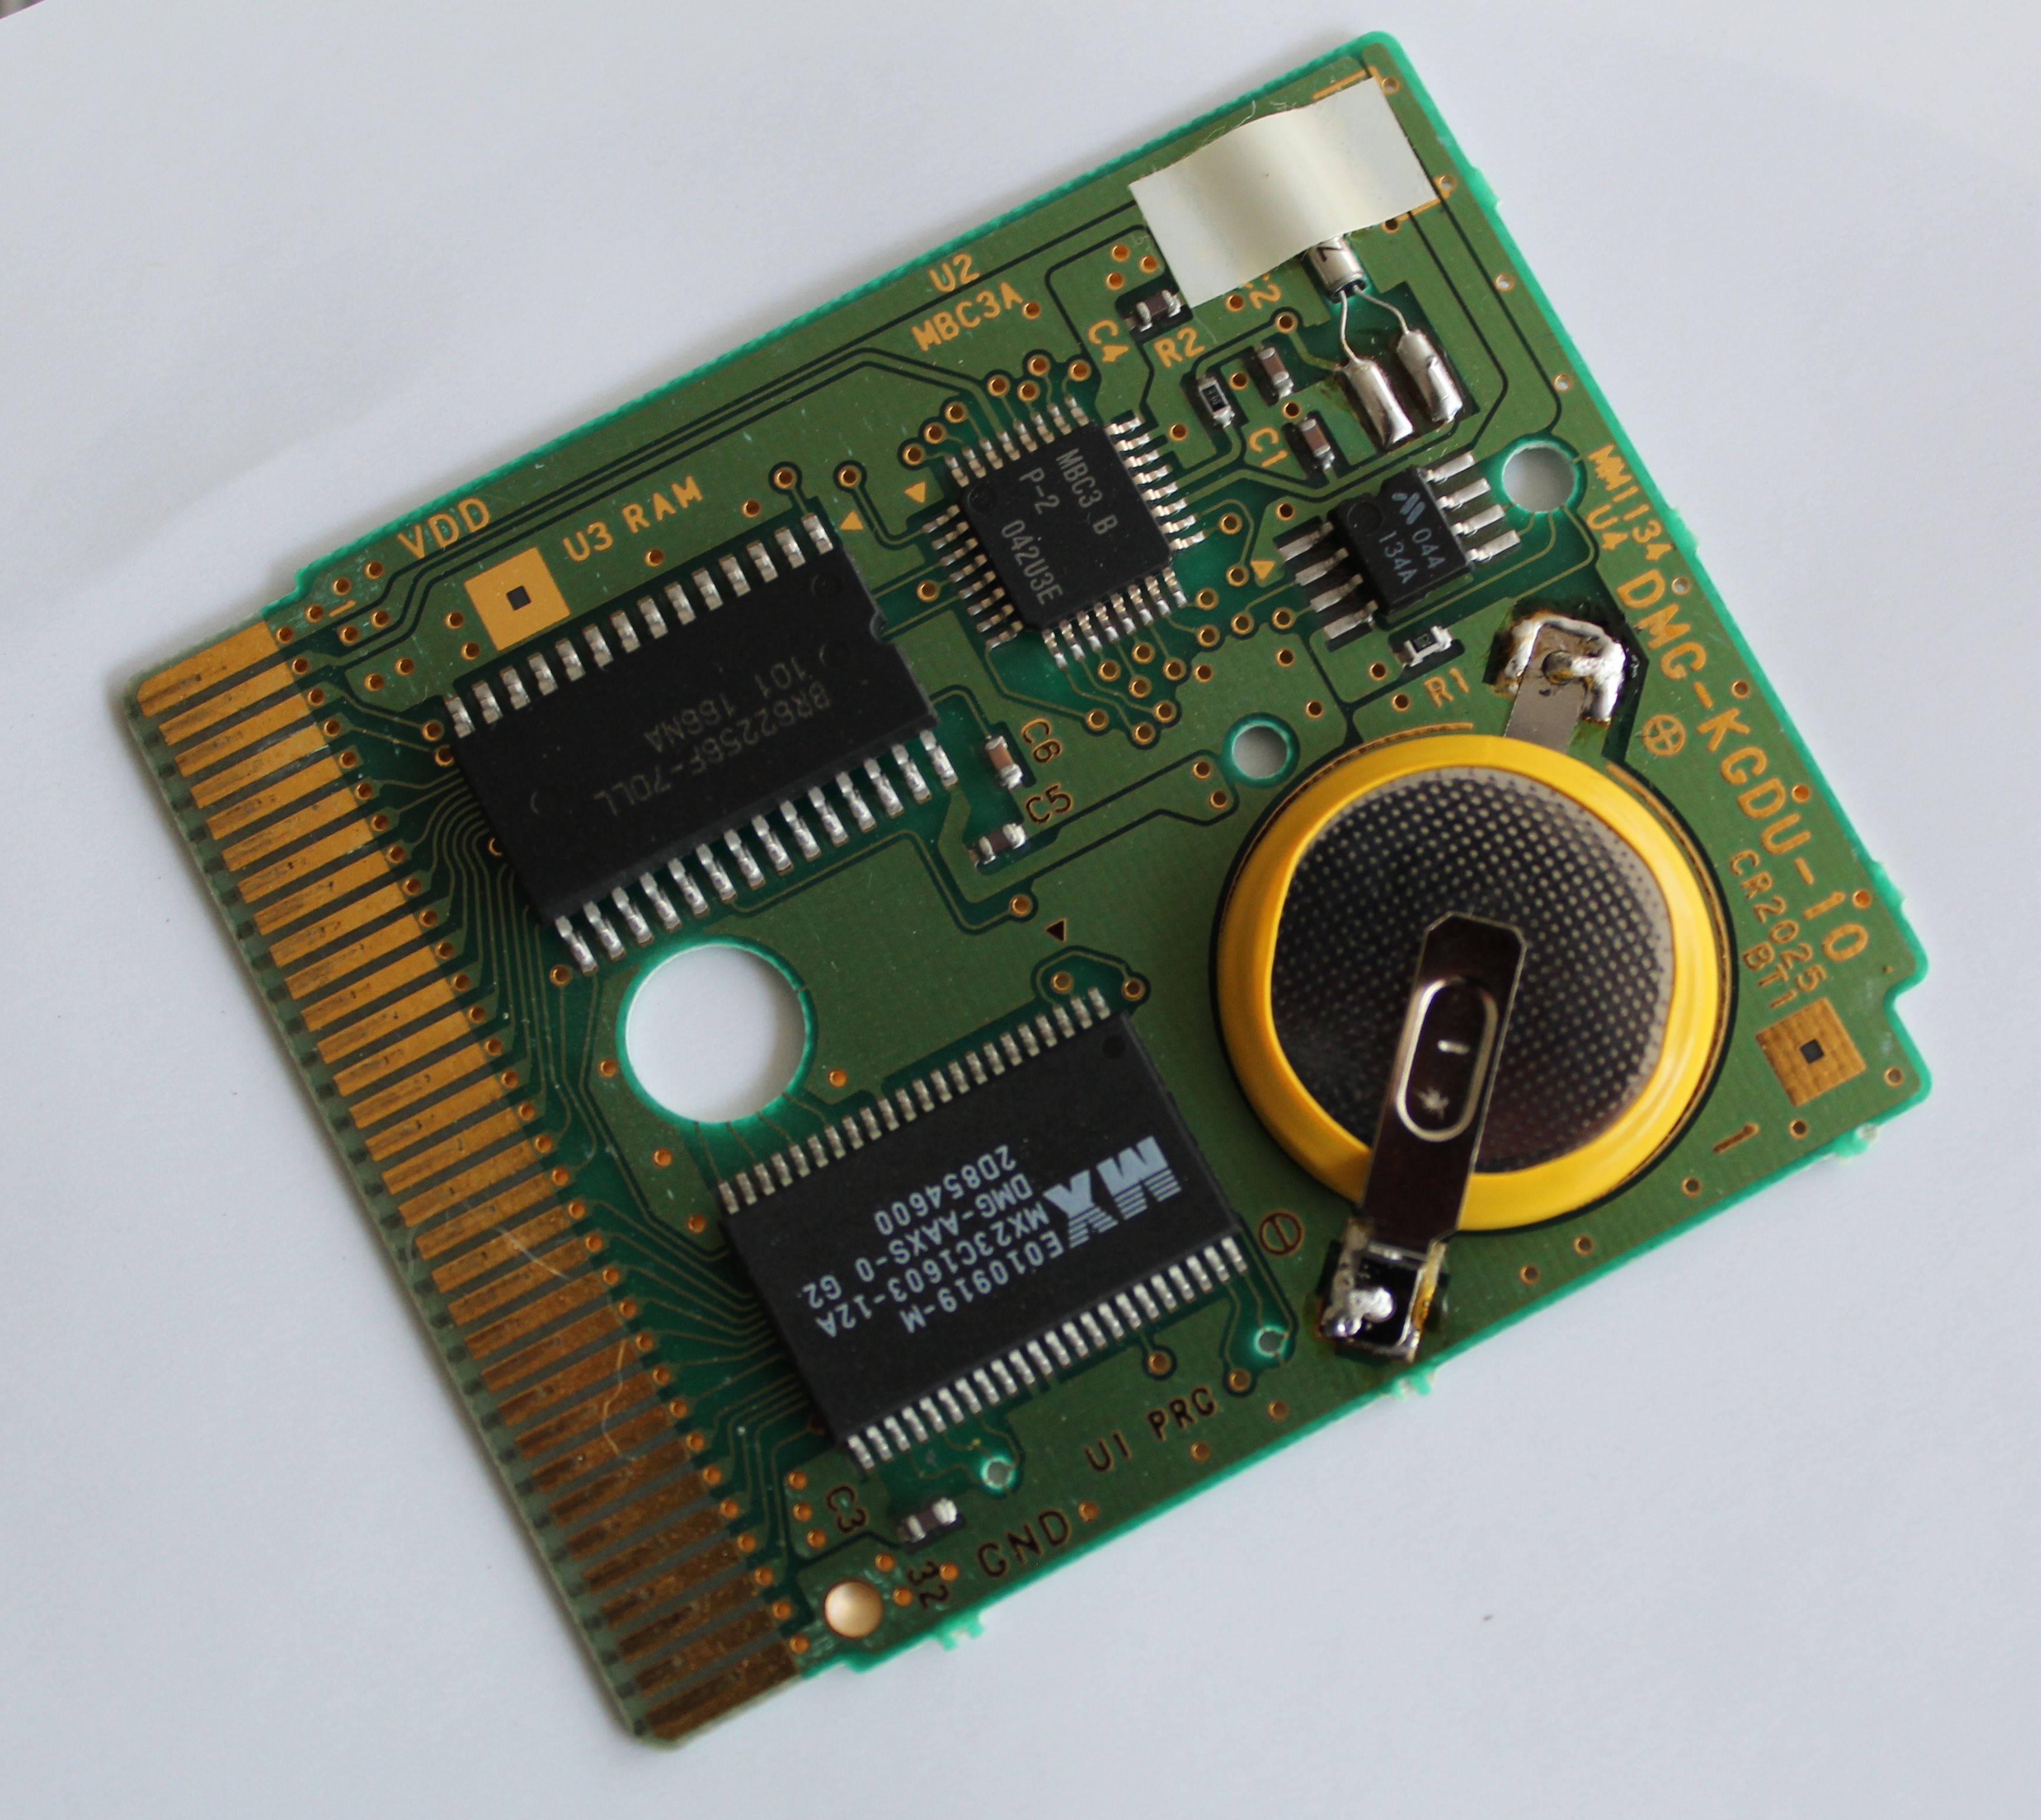 Tutoriel: changement de la pile de sauvegarde sur une cartouche GBA, GBC,  NES, SNES, Megadrive